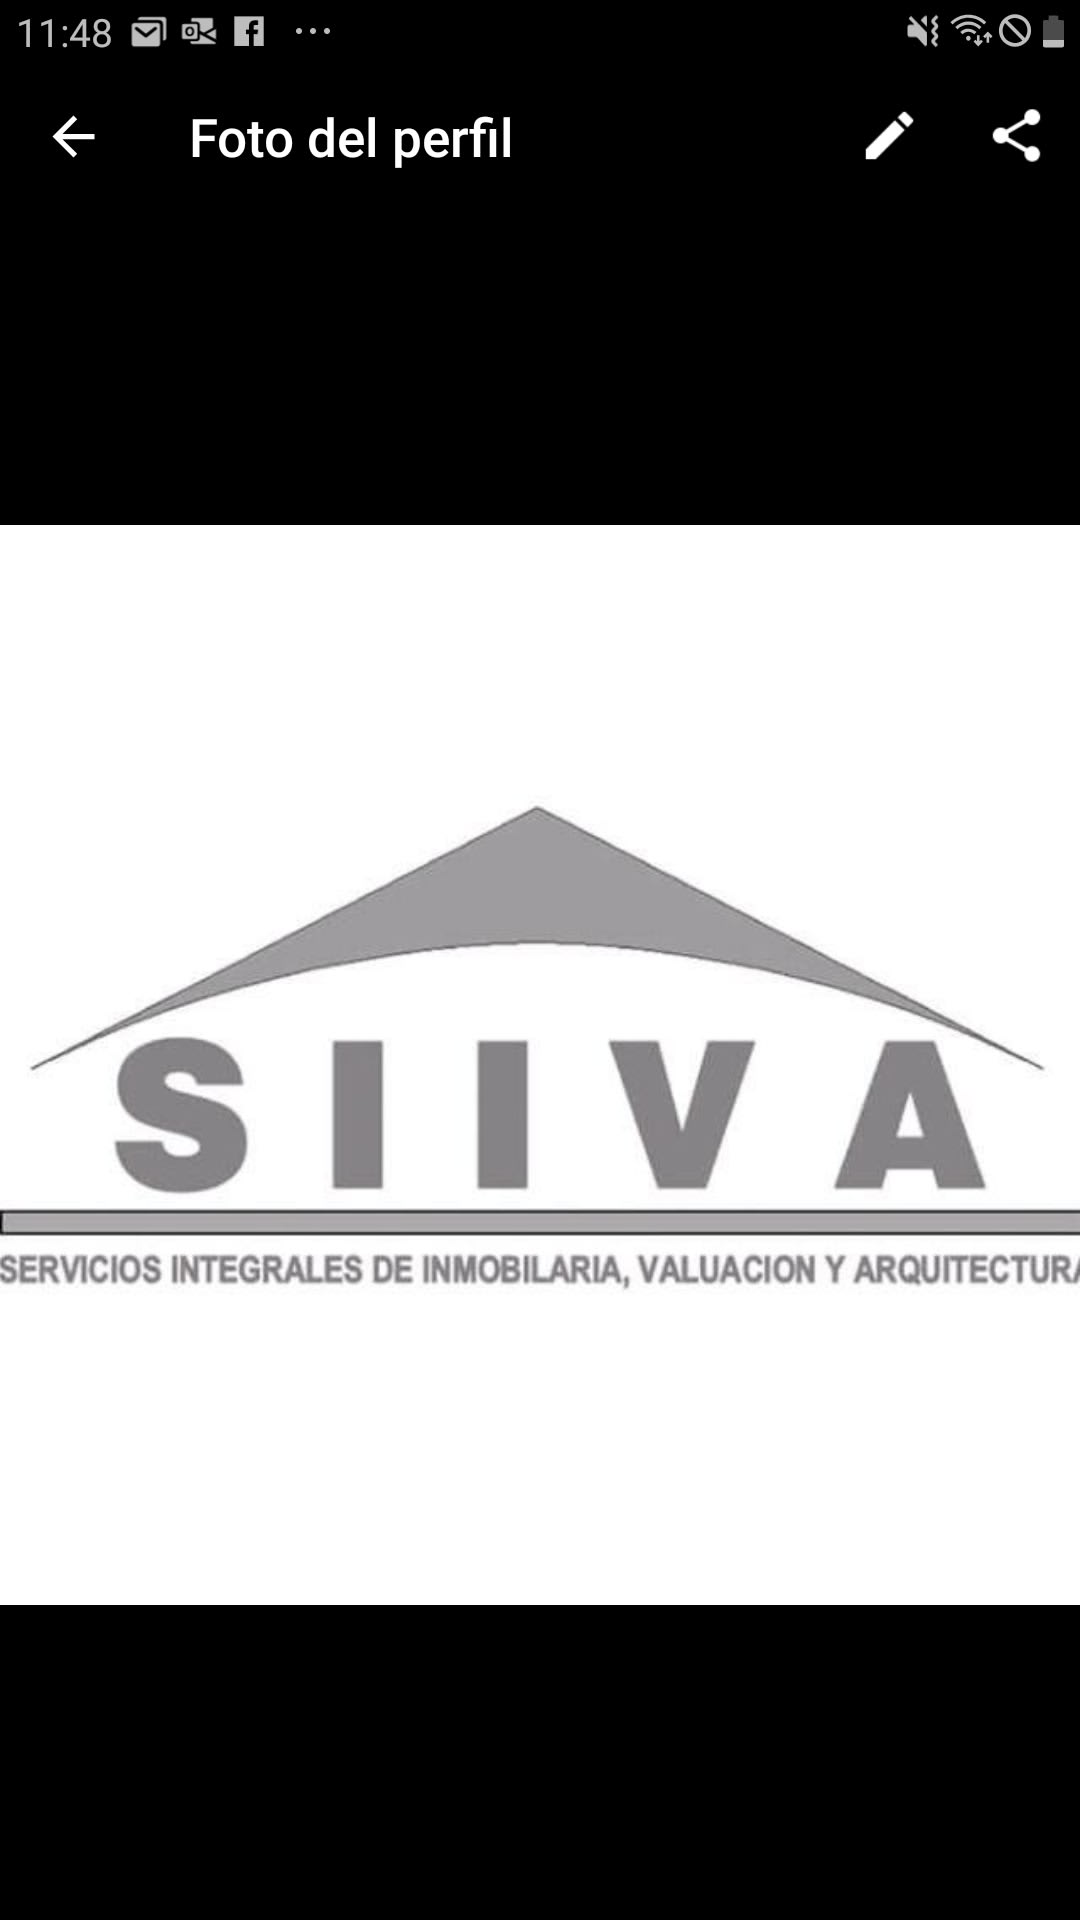 SIIVA Servicios Integrales De Inmobiliaria Valuacion Y Arquitectura